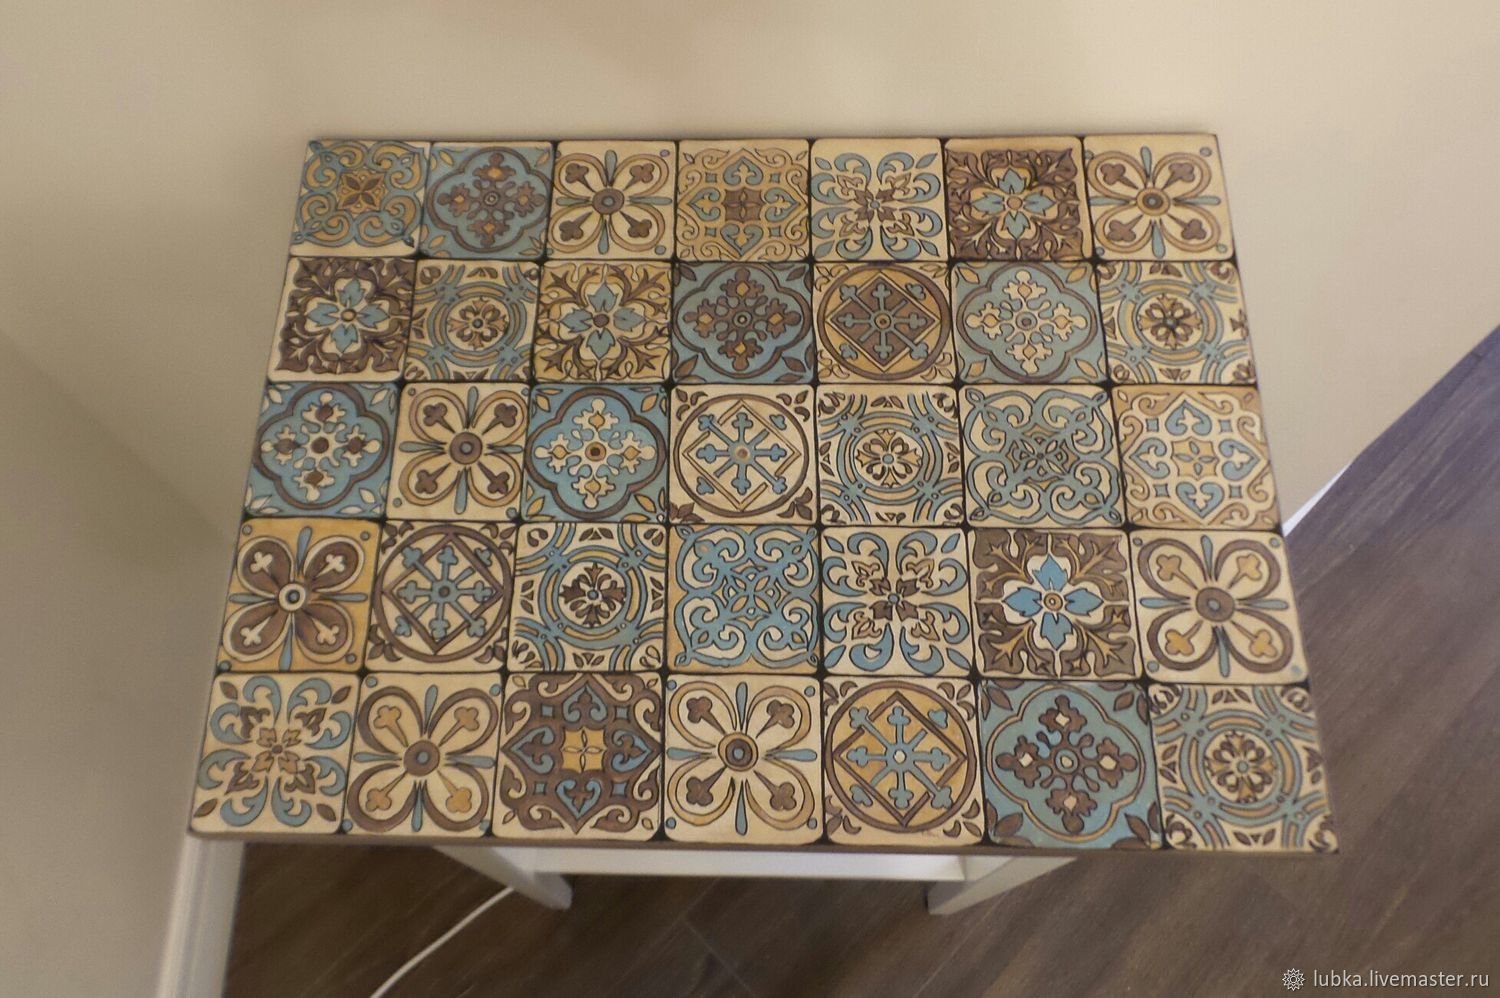 Купить имитацию плитки. Изразцы Марокко. Изразцы в марокканском стиле. Кафель под изразцы. Декоративная керамическая плитка.